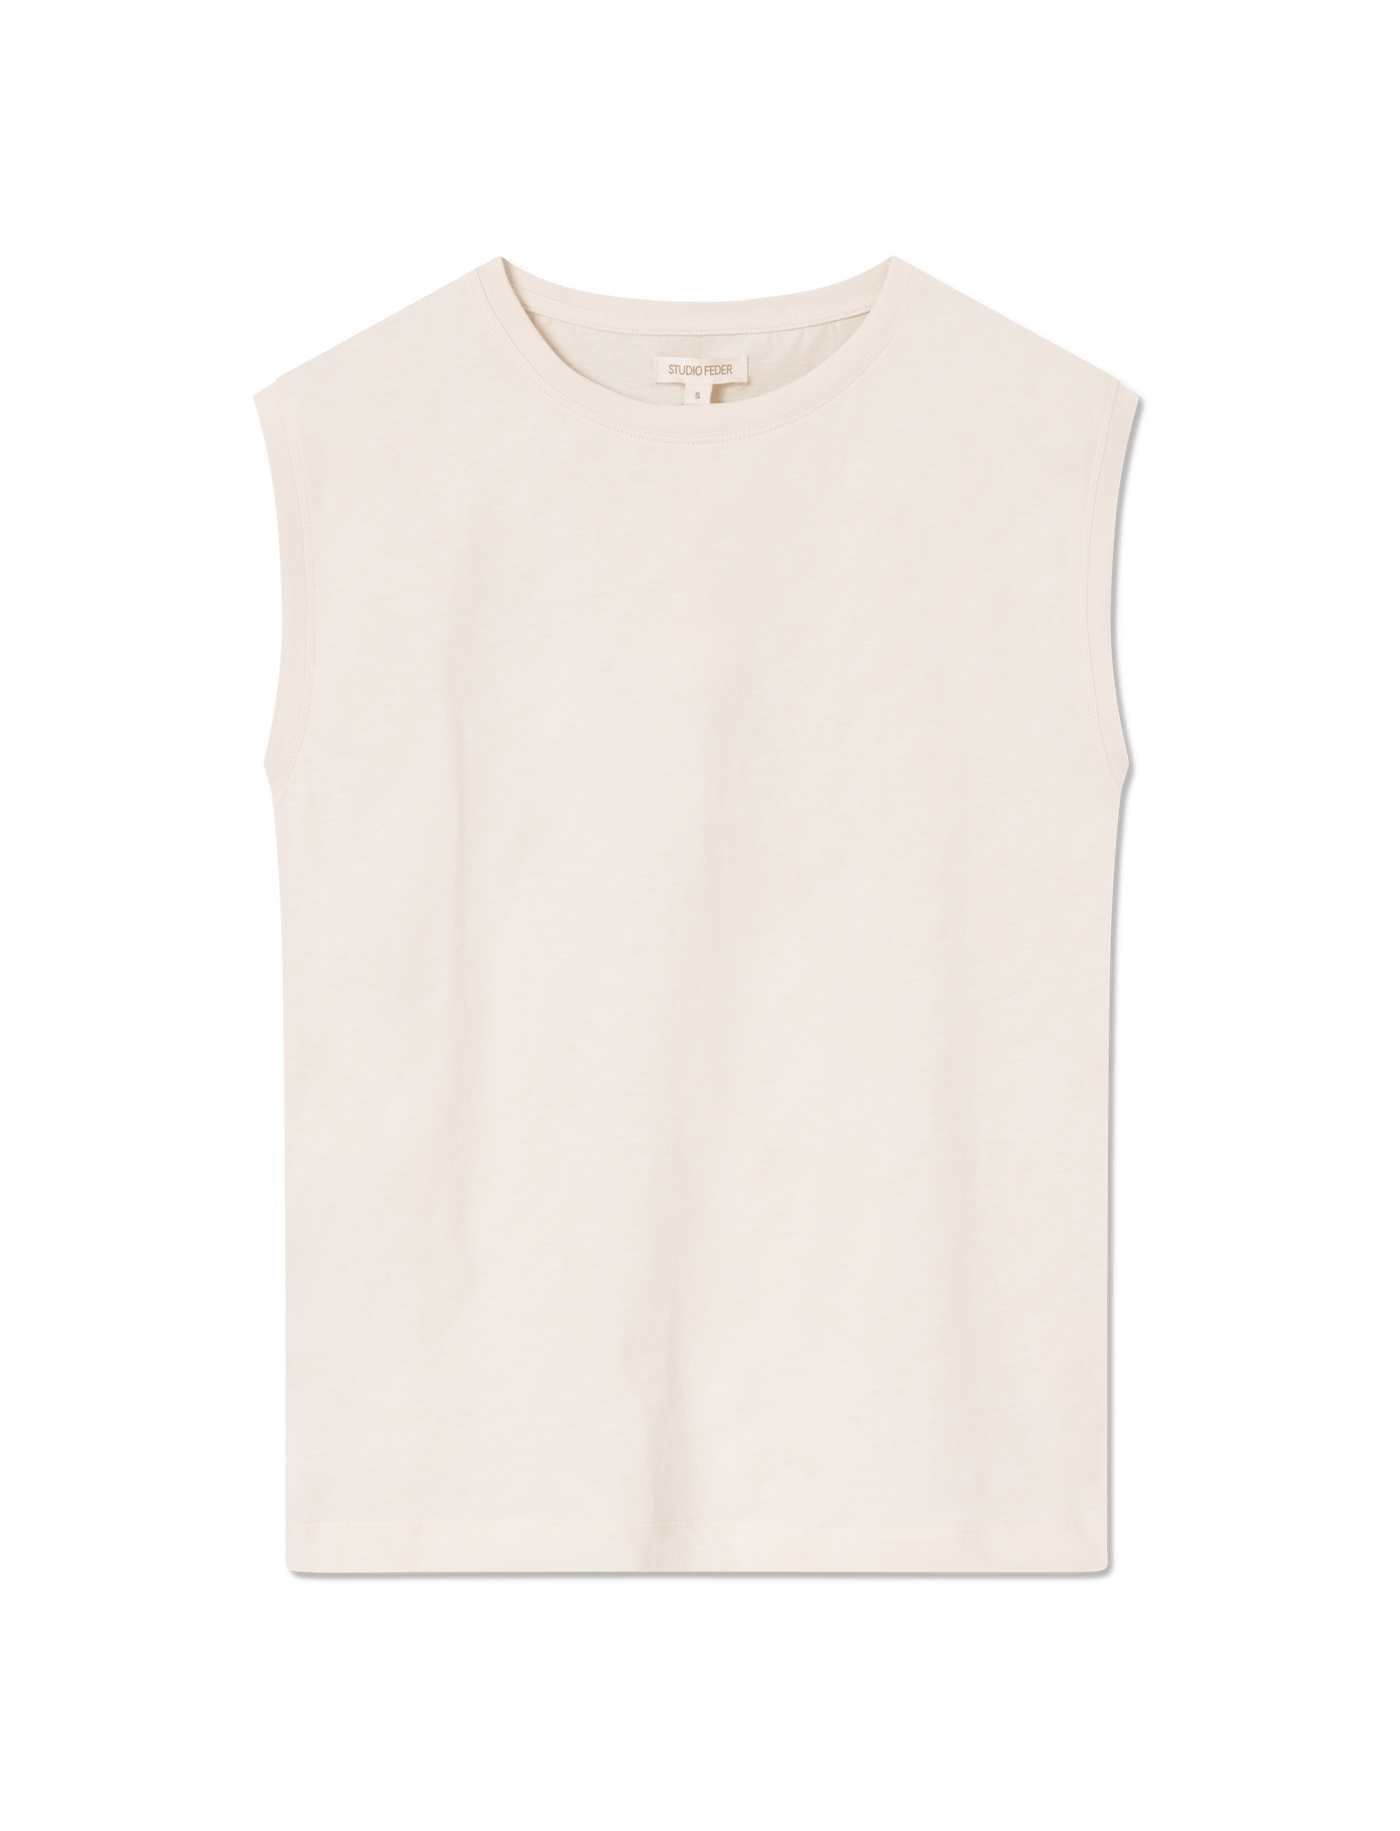 Sloane t-shirt - Ivory